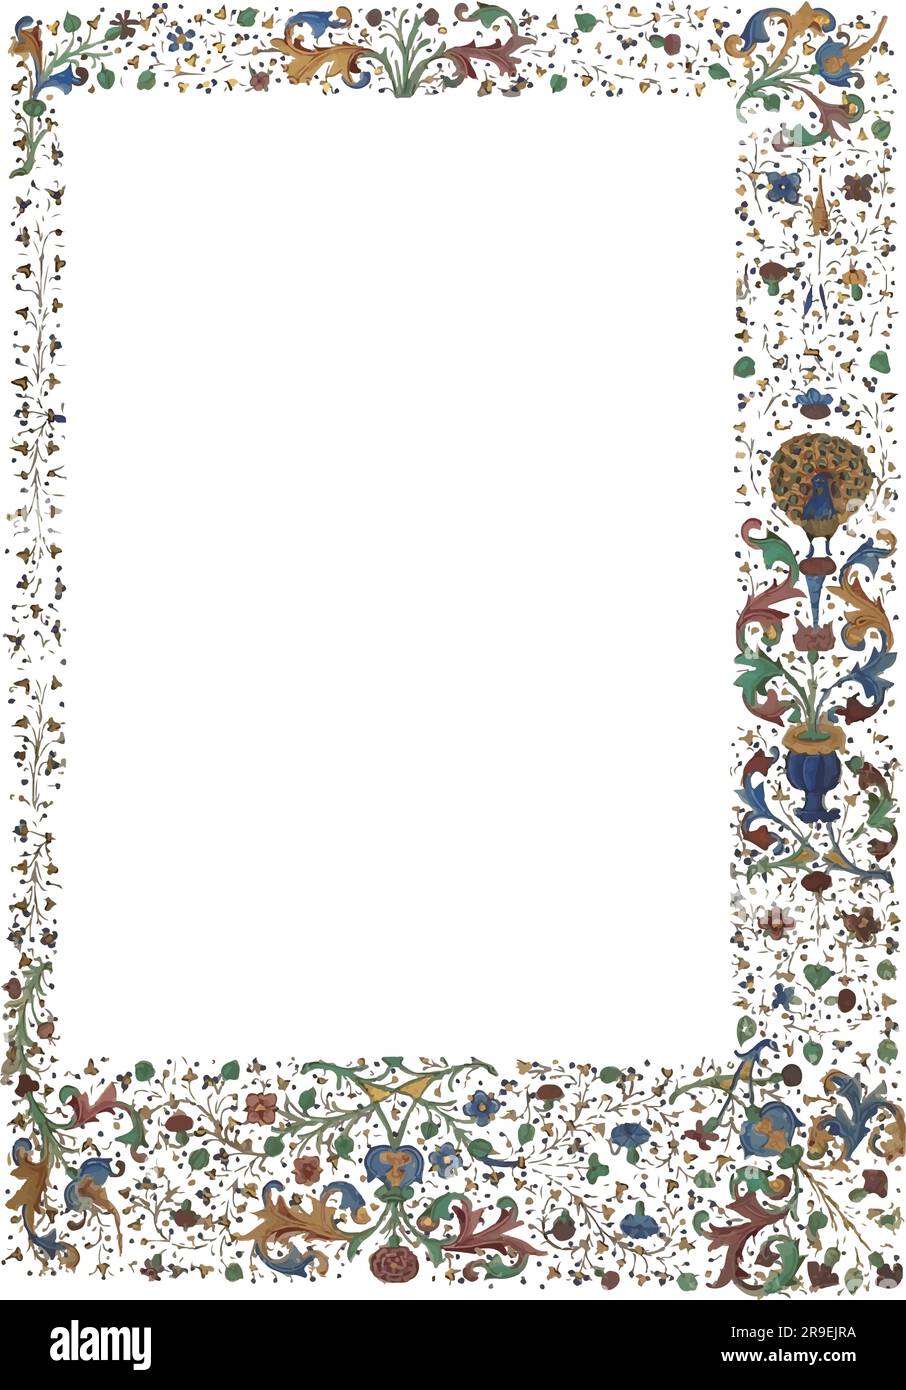 Mittelalterlicher Stil, beleuchtete Blumenränder, Pfau am Rand Stock Vektor